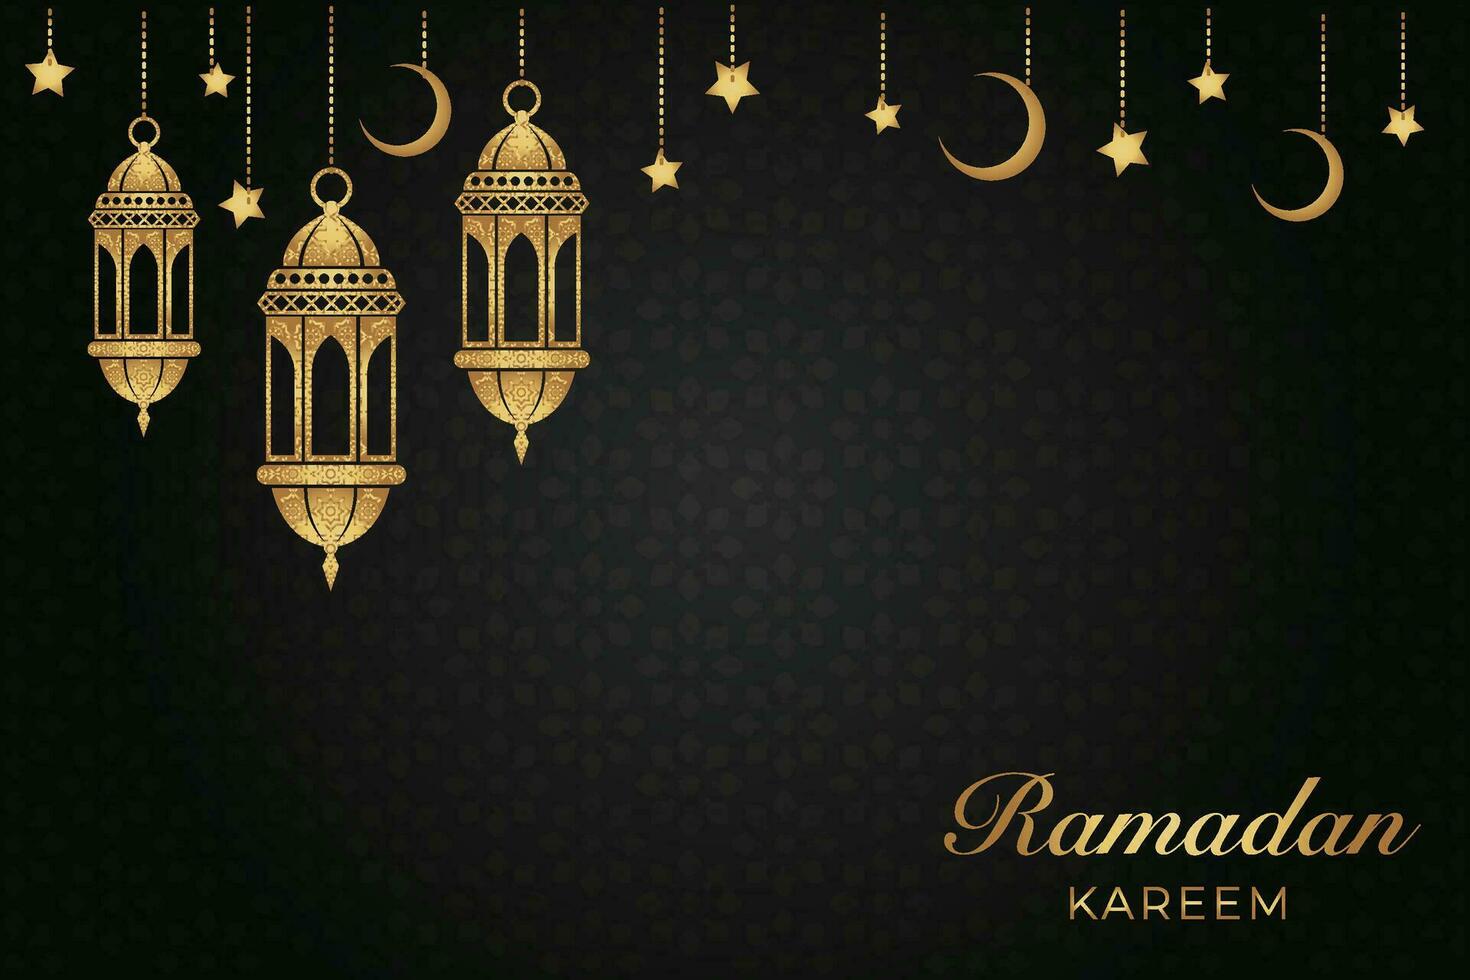 eid al-fitr mubarak salutation carte avec lanternes et croissant vecteur